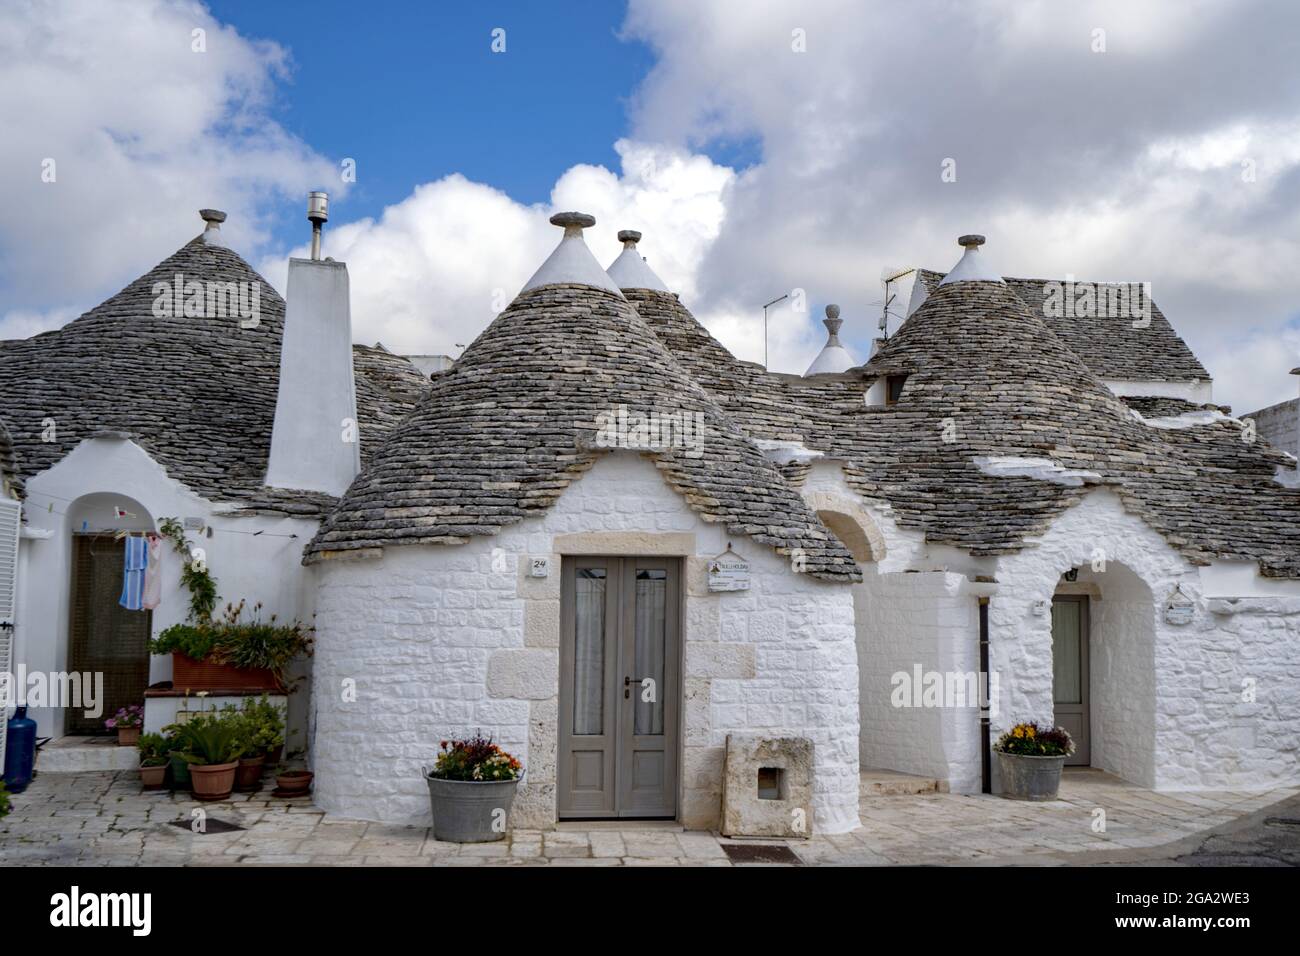 Traditional Apulian round stone Trulli houses of Alberobello; Alberobello, Puglia, Italy Stock Photo